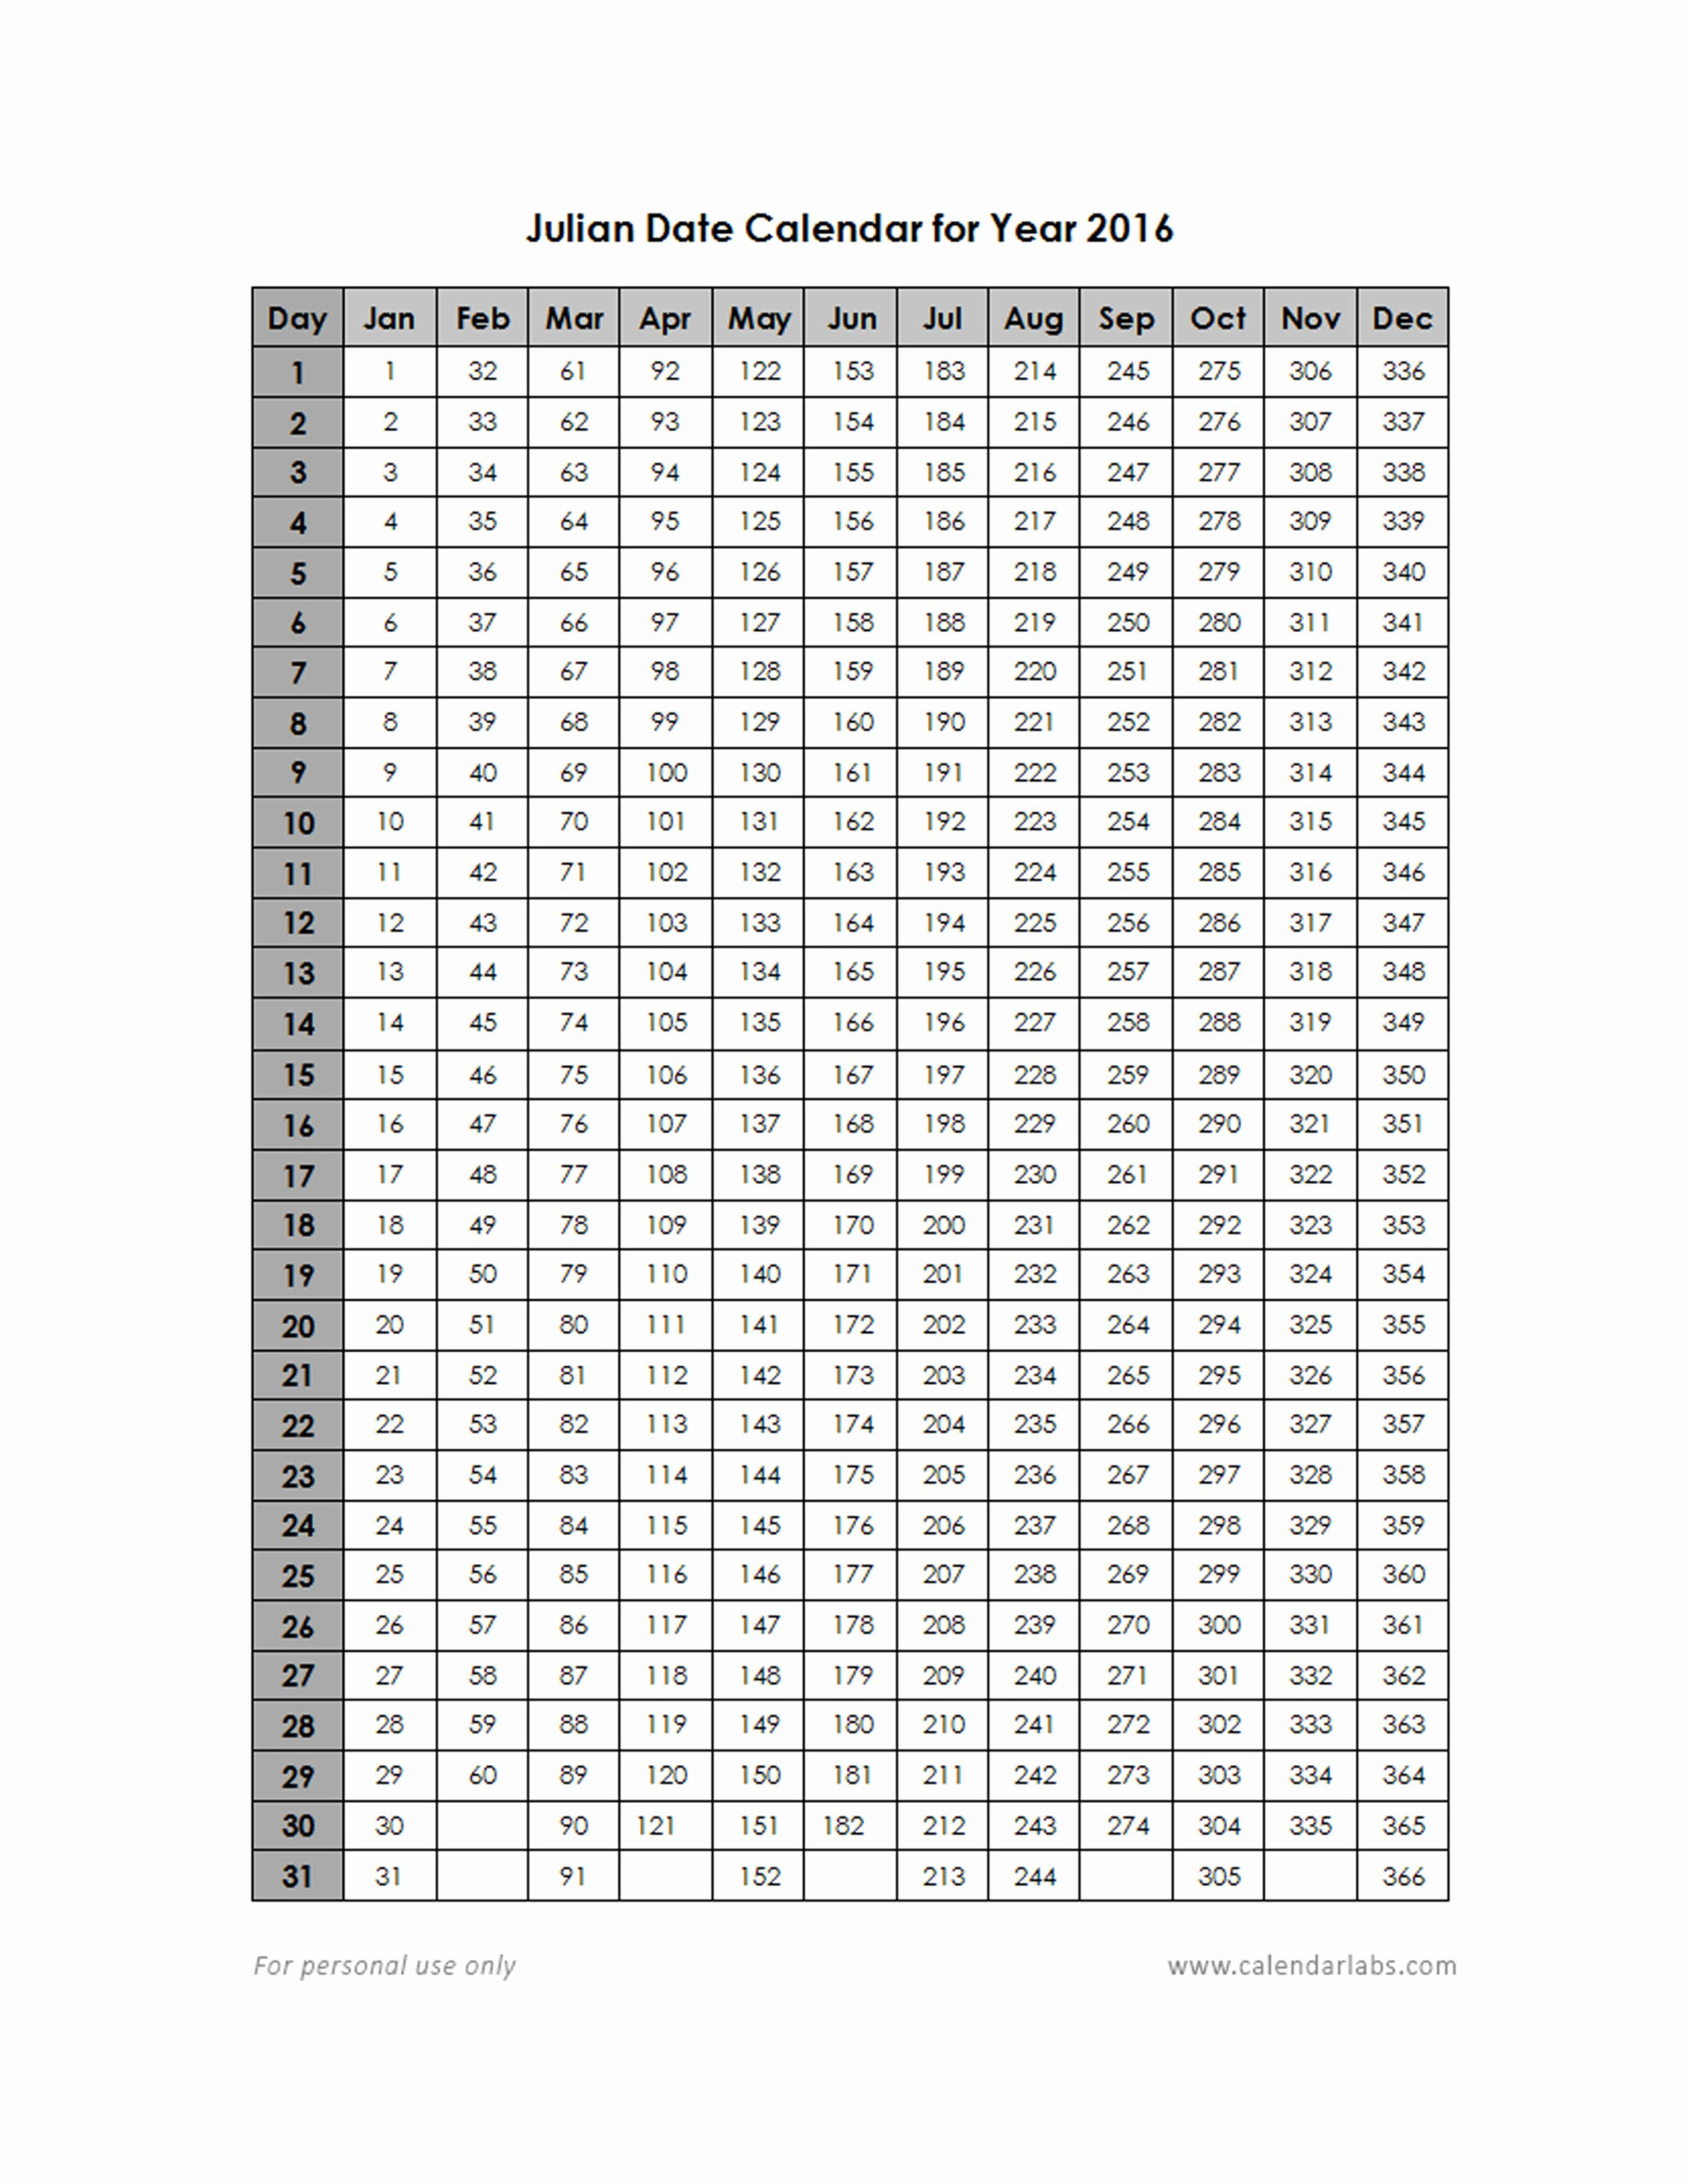 Julian Date Calendar 2020 | Calendar For Planning pertaining to Perpetual Julian Date Calendar